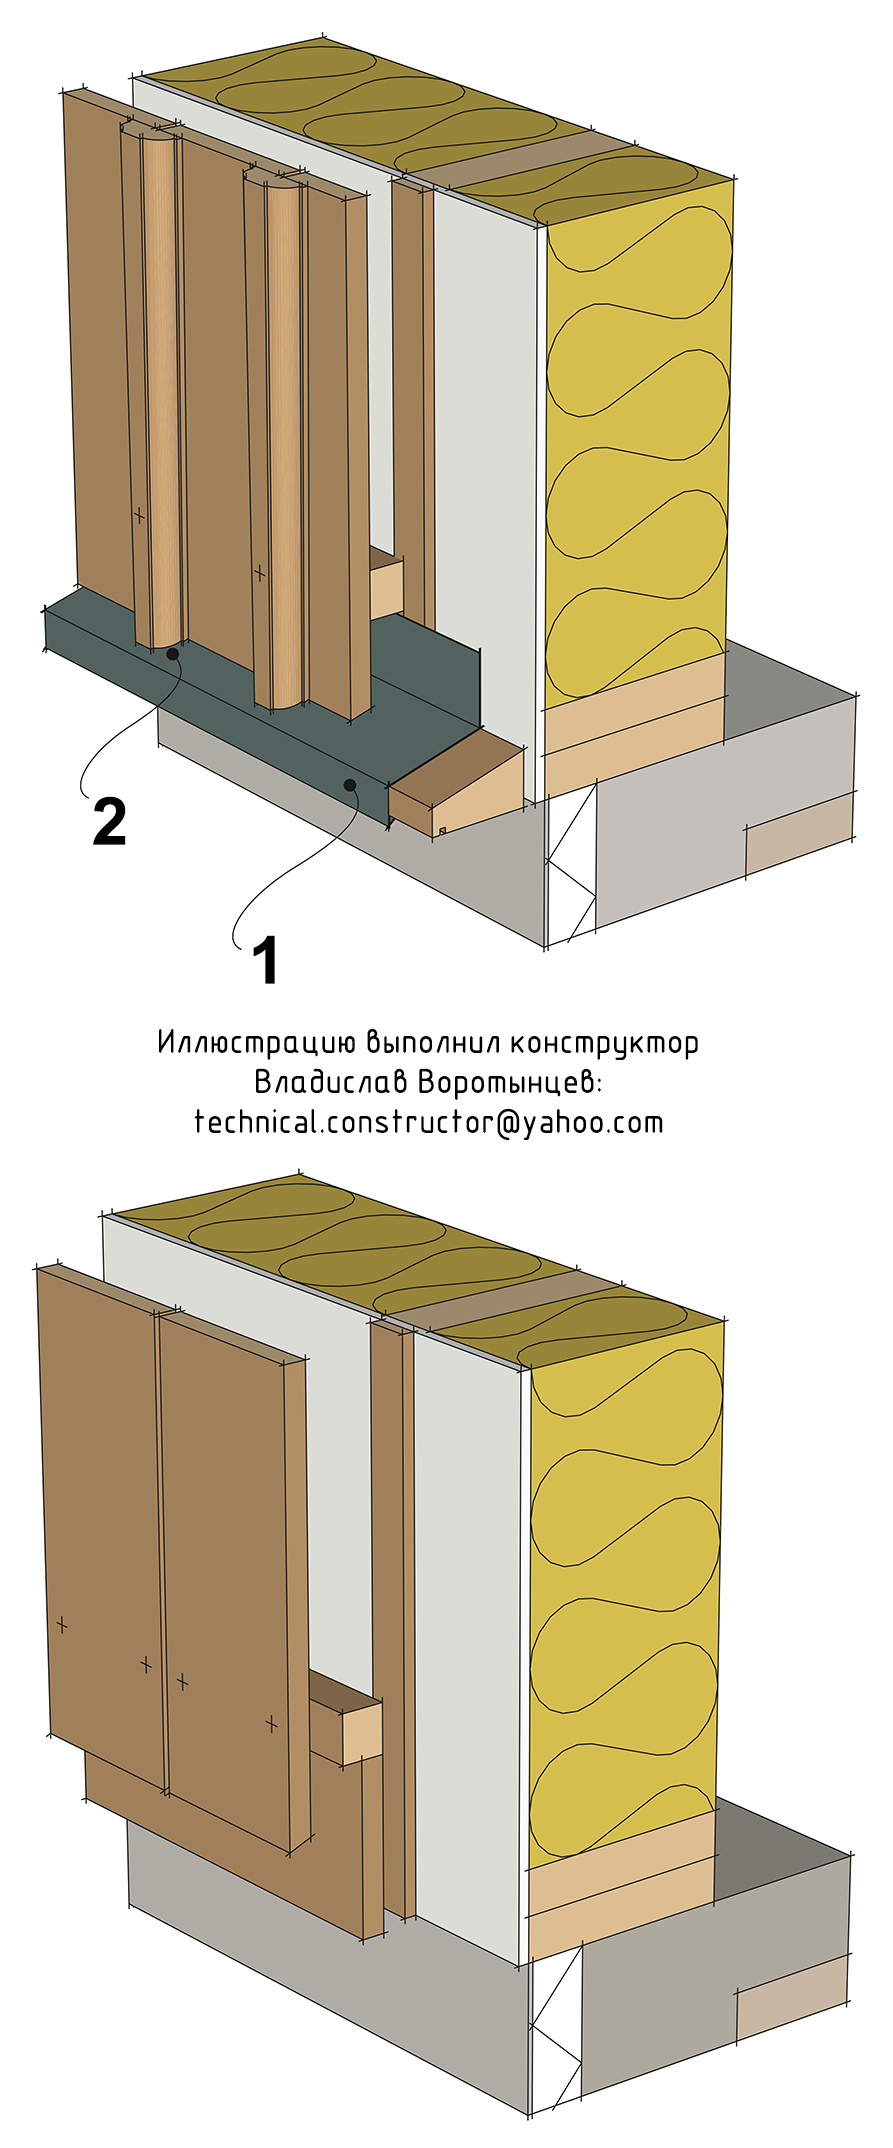  Альтернативные примеры монтажа вертикальной наружной обшивки у основания стены